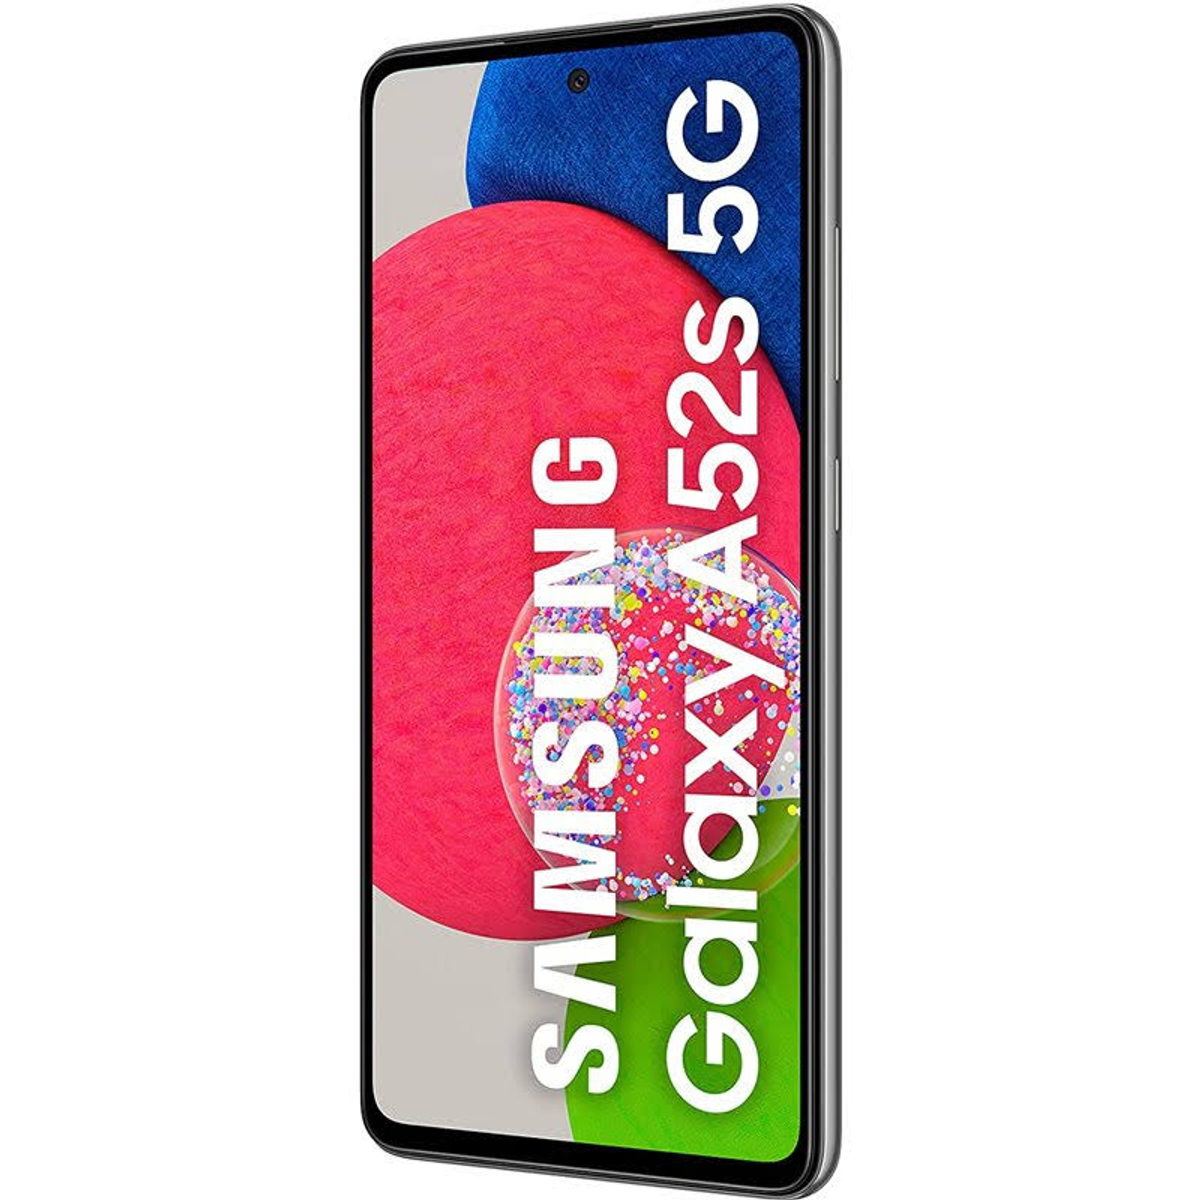 SAMSUNG GB Awesome A52S BLACK Black EE 128 128GB 5G Dual SIM GALAXY